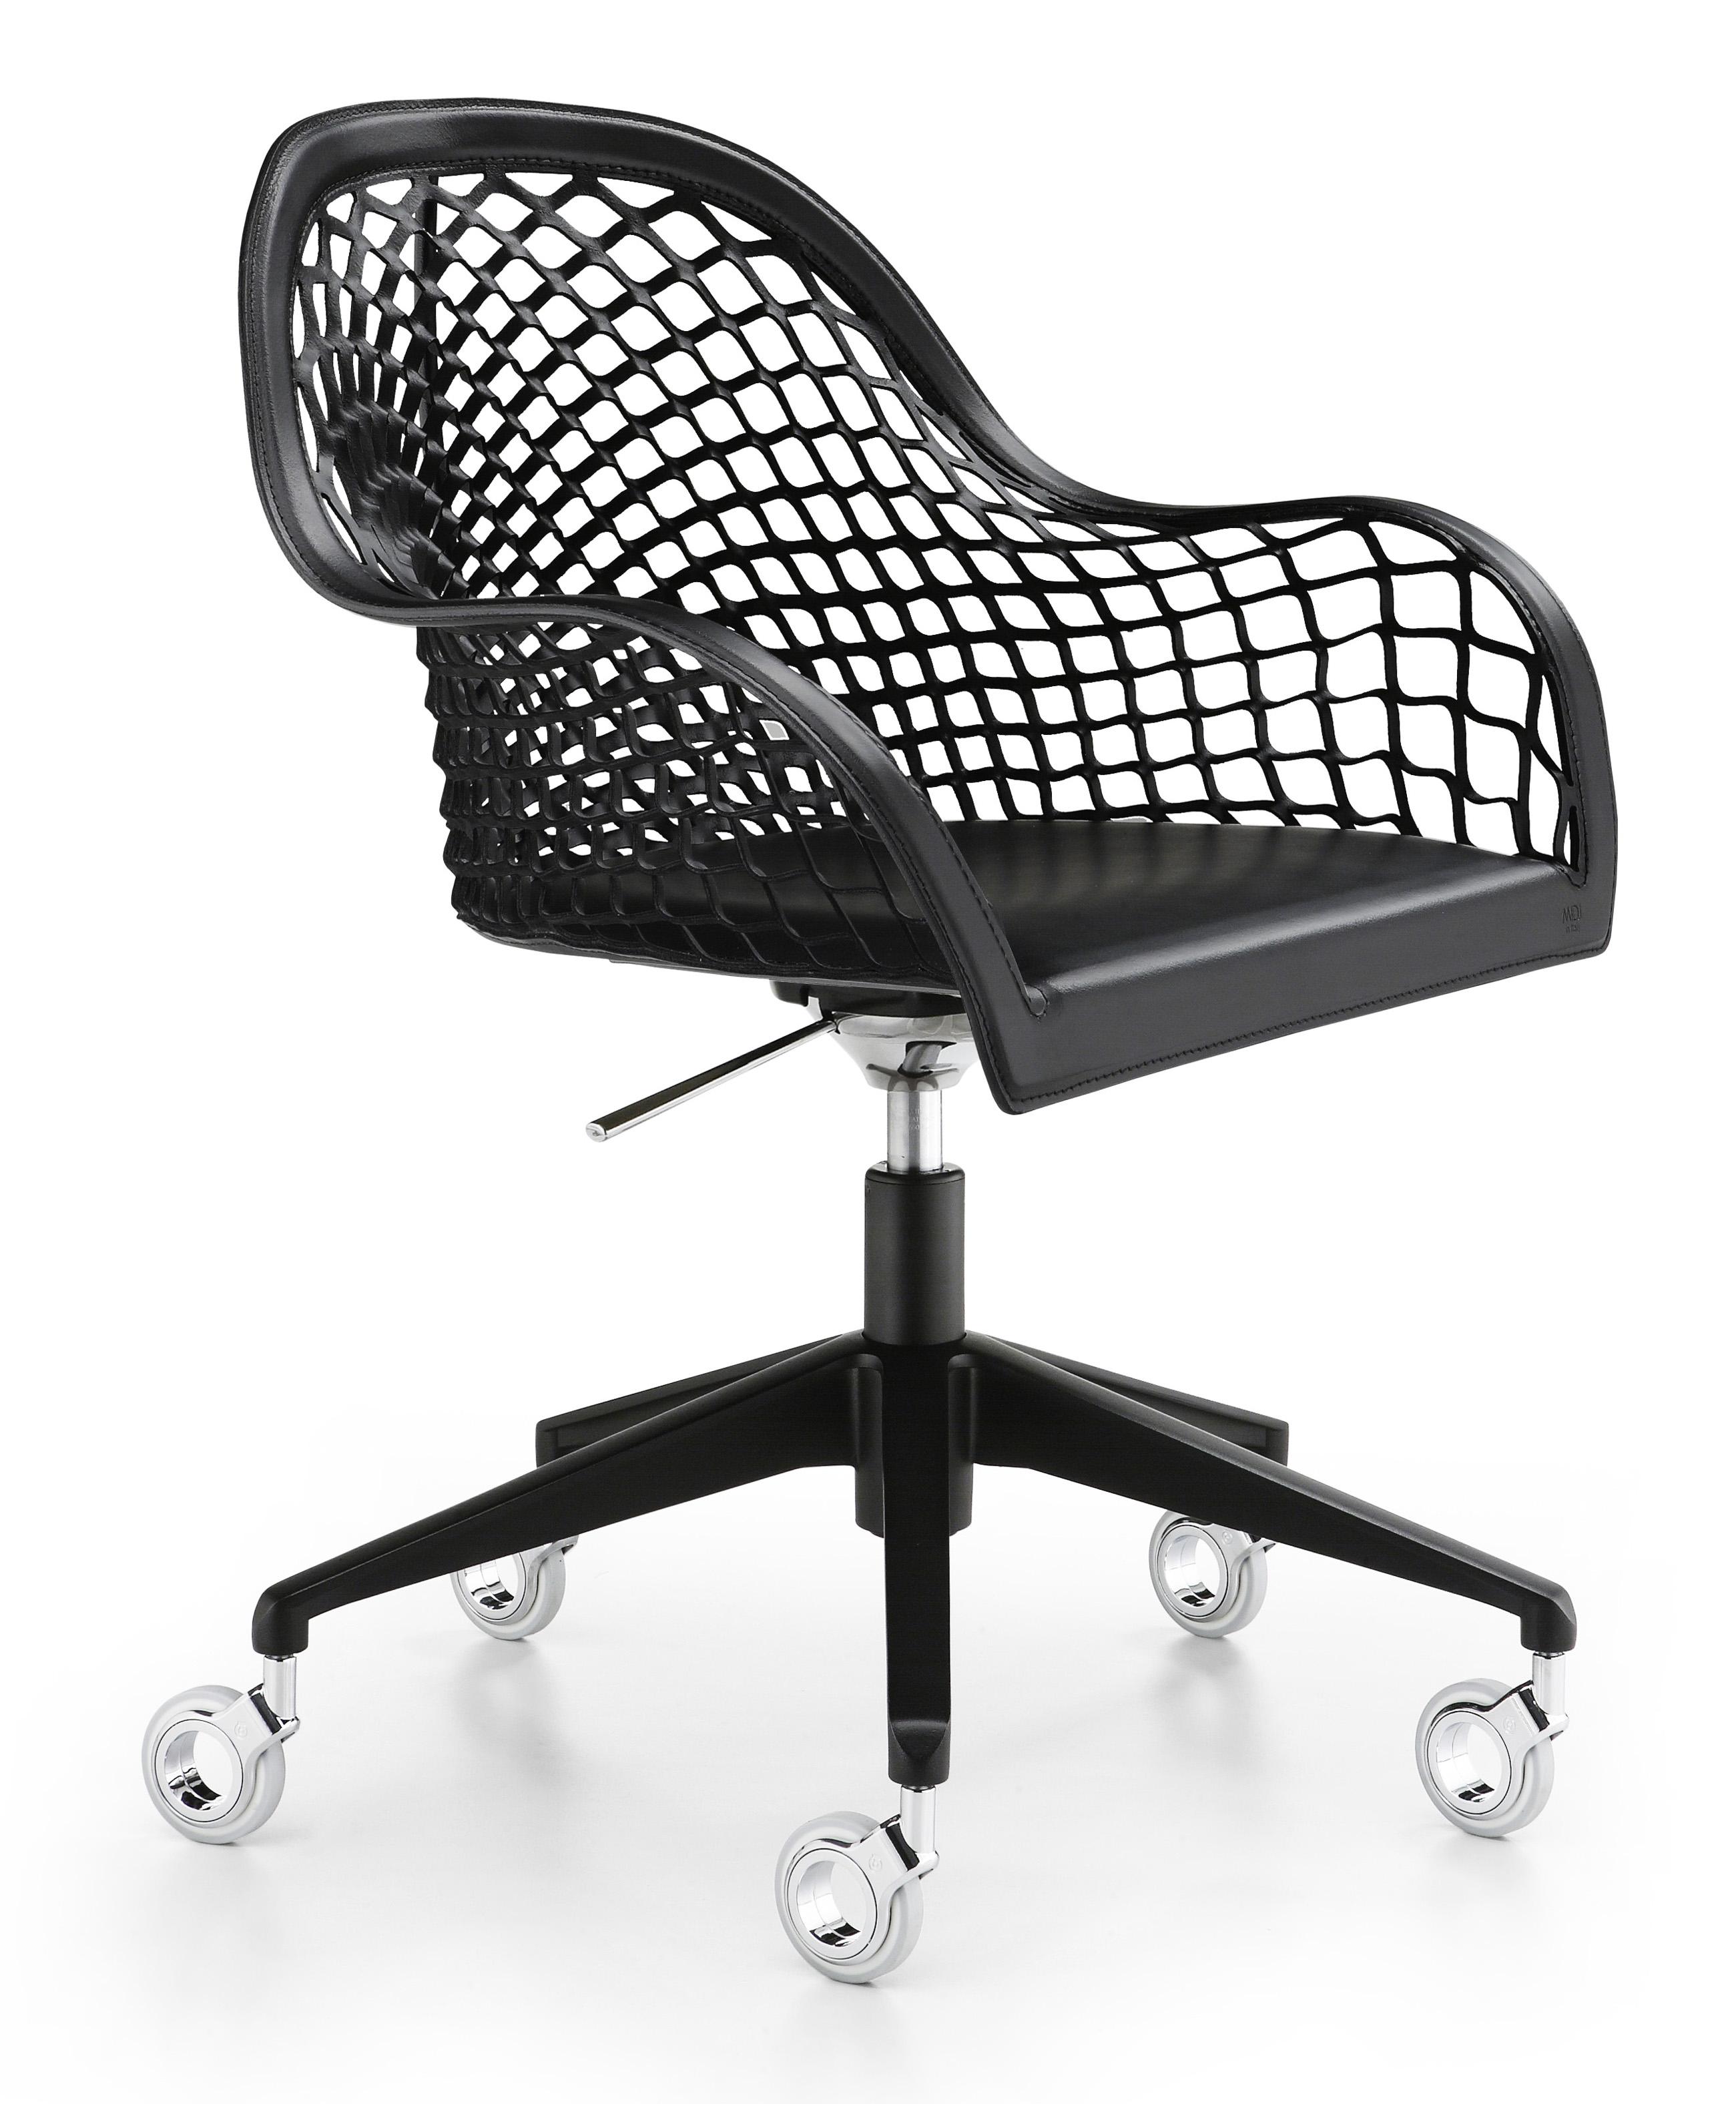 bianco Modello Ministyle Chaise-expert seduta regolabile in profondità Multi per bambini Girevole a 360° Altezza regolabile Schienale regolabile Sedia da scrivania 